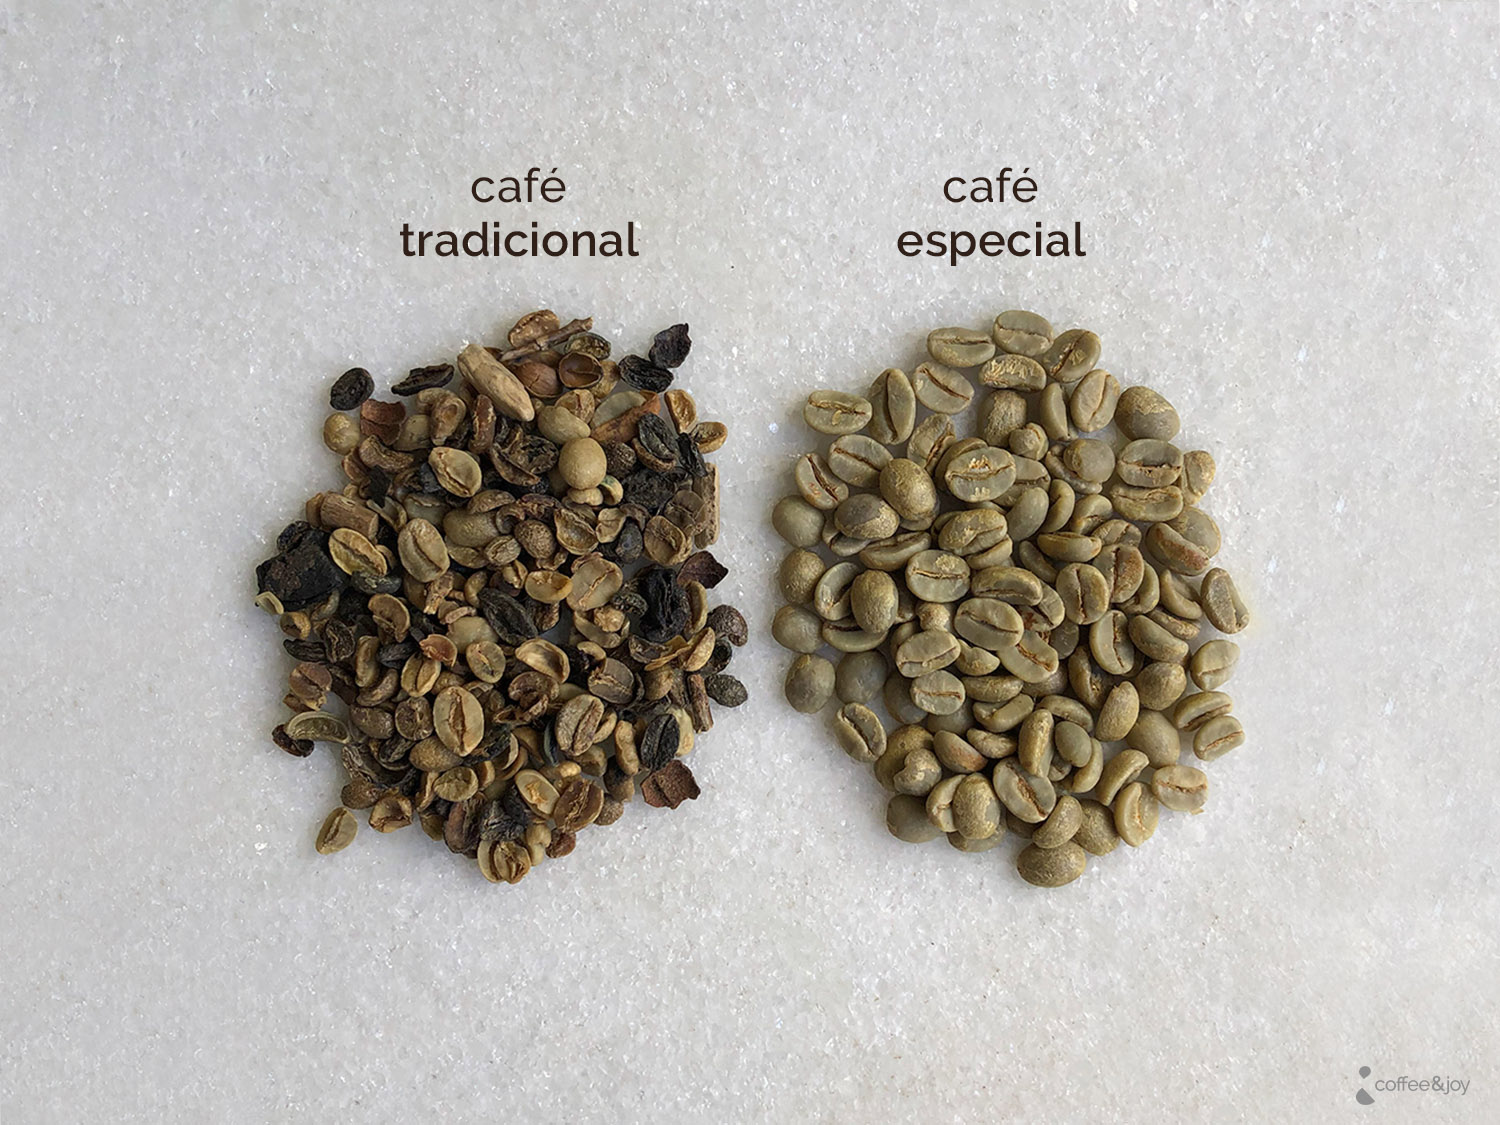 Guia completo do café conilon especial, do cultivo ao consumo